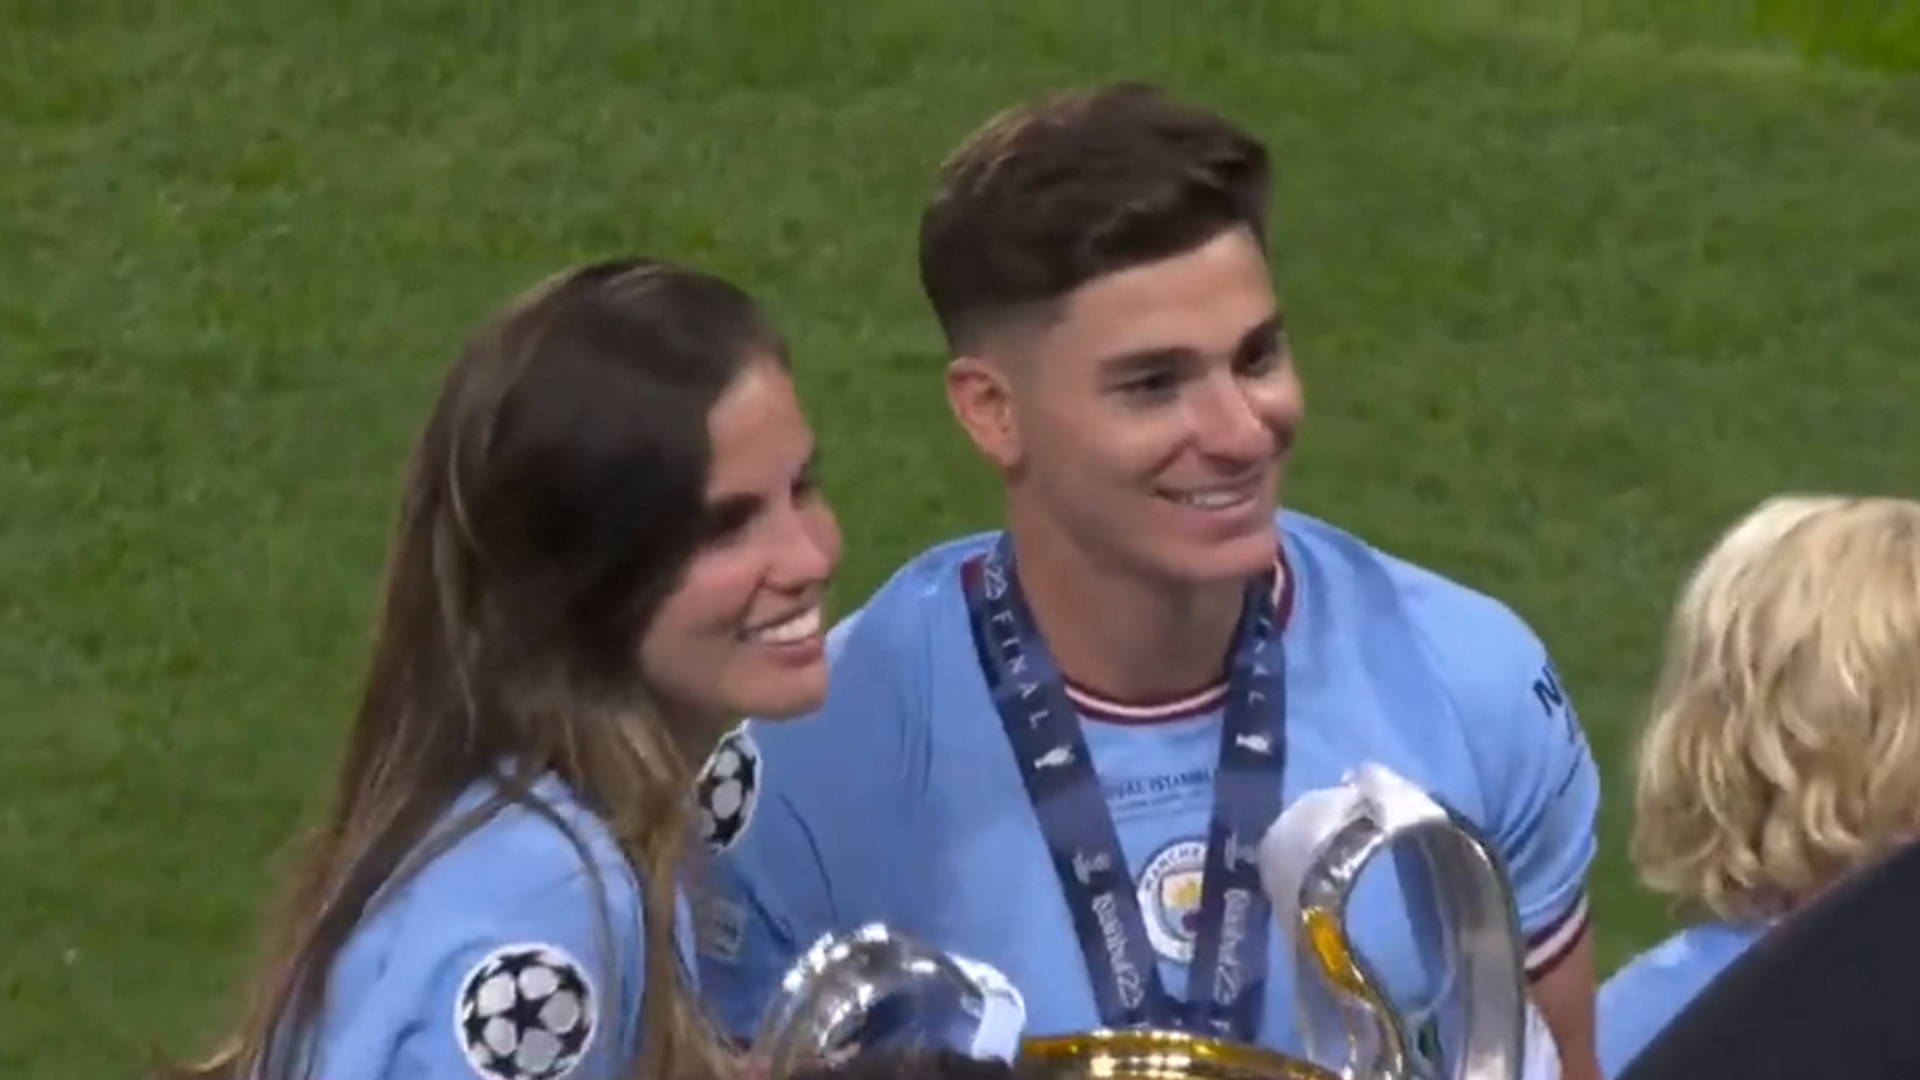 La celebración de Julián Álvarez tras ganar la Champions League: foto romántica con su novia y una frase sobre su futuro